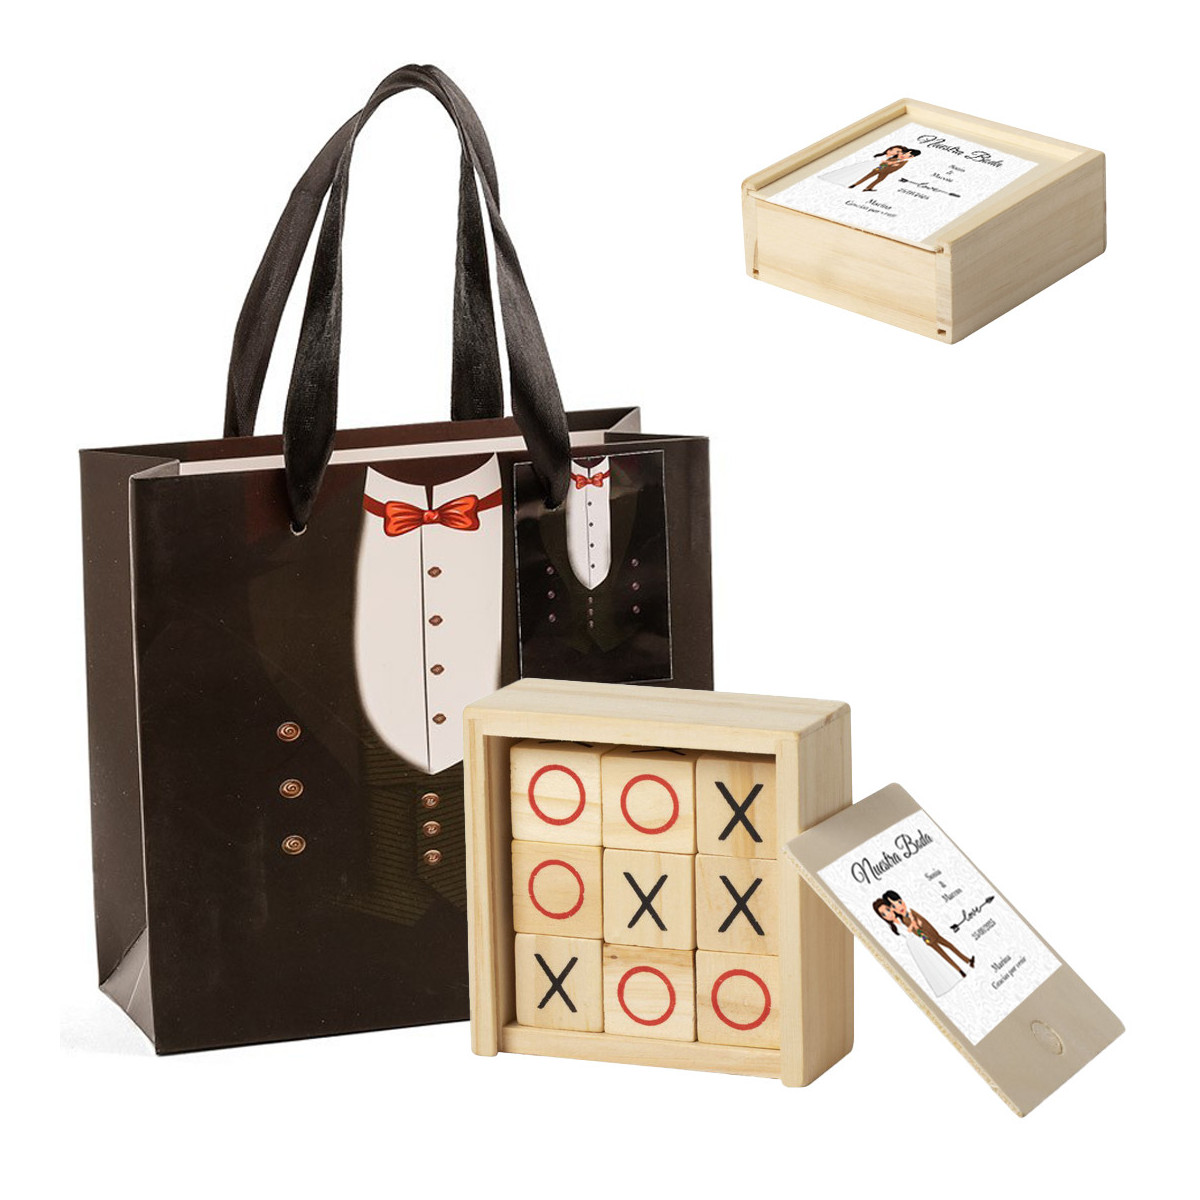 Tic tac toe in legno con scatola personalizzata con adesivo per matrimonio e sacchetto regalo da uomo